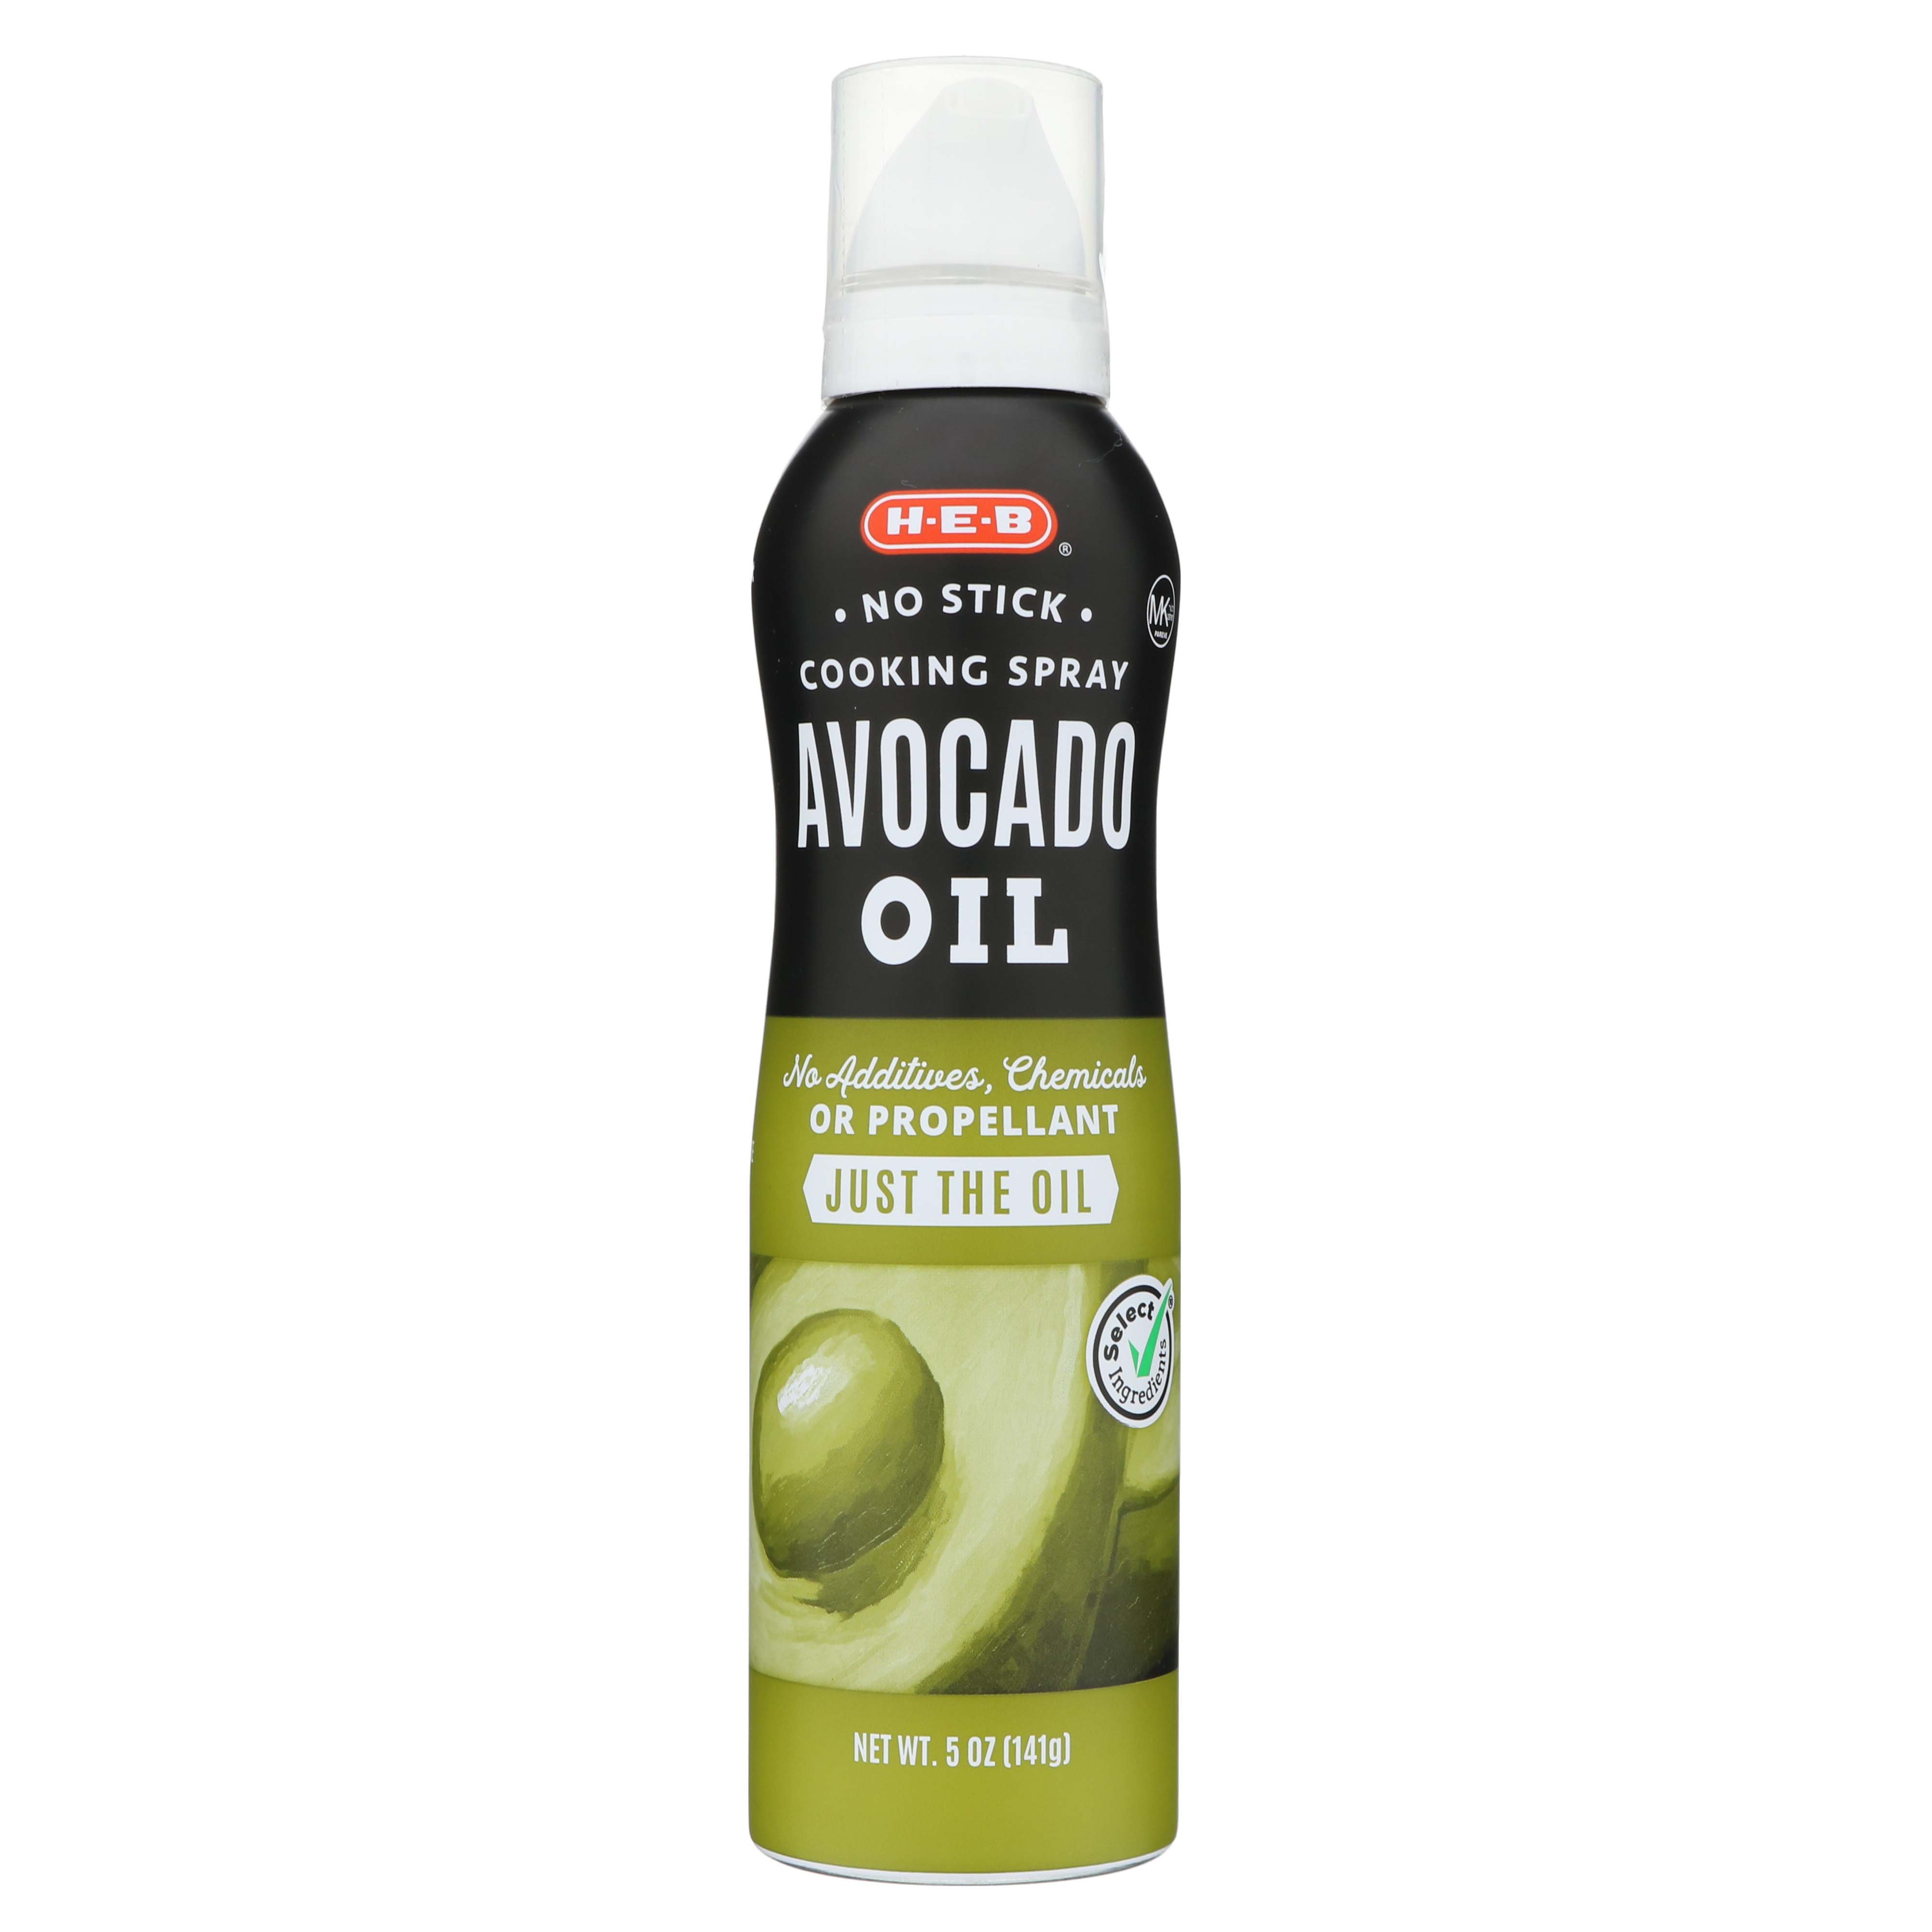 H-E-B Avocado Oil No Stick Cooking Spray - Shop Oils at H-E-B